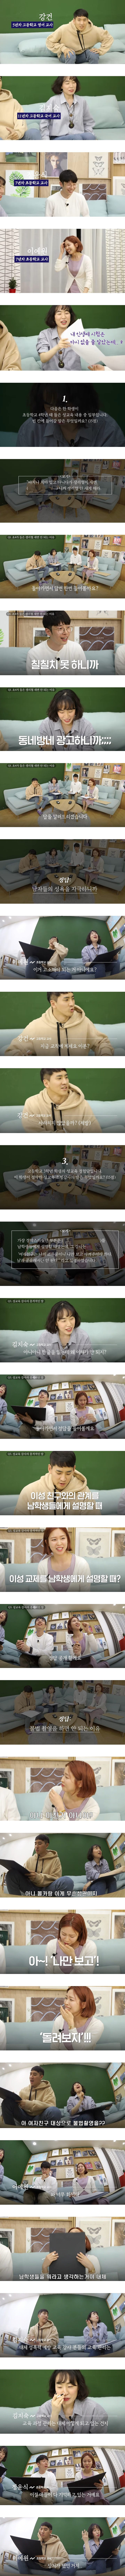 한국 학생들의 성교육 현실. jpg